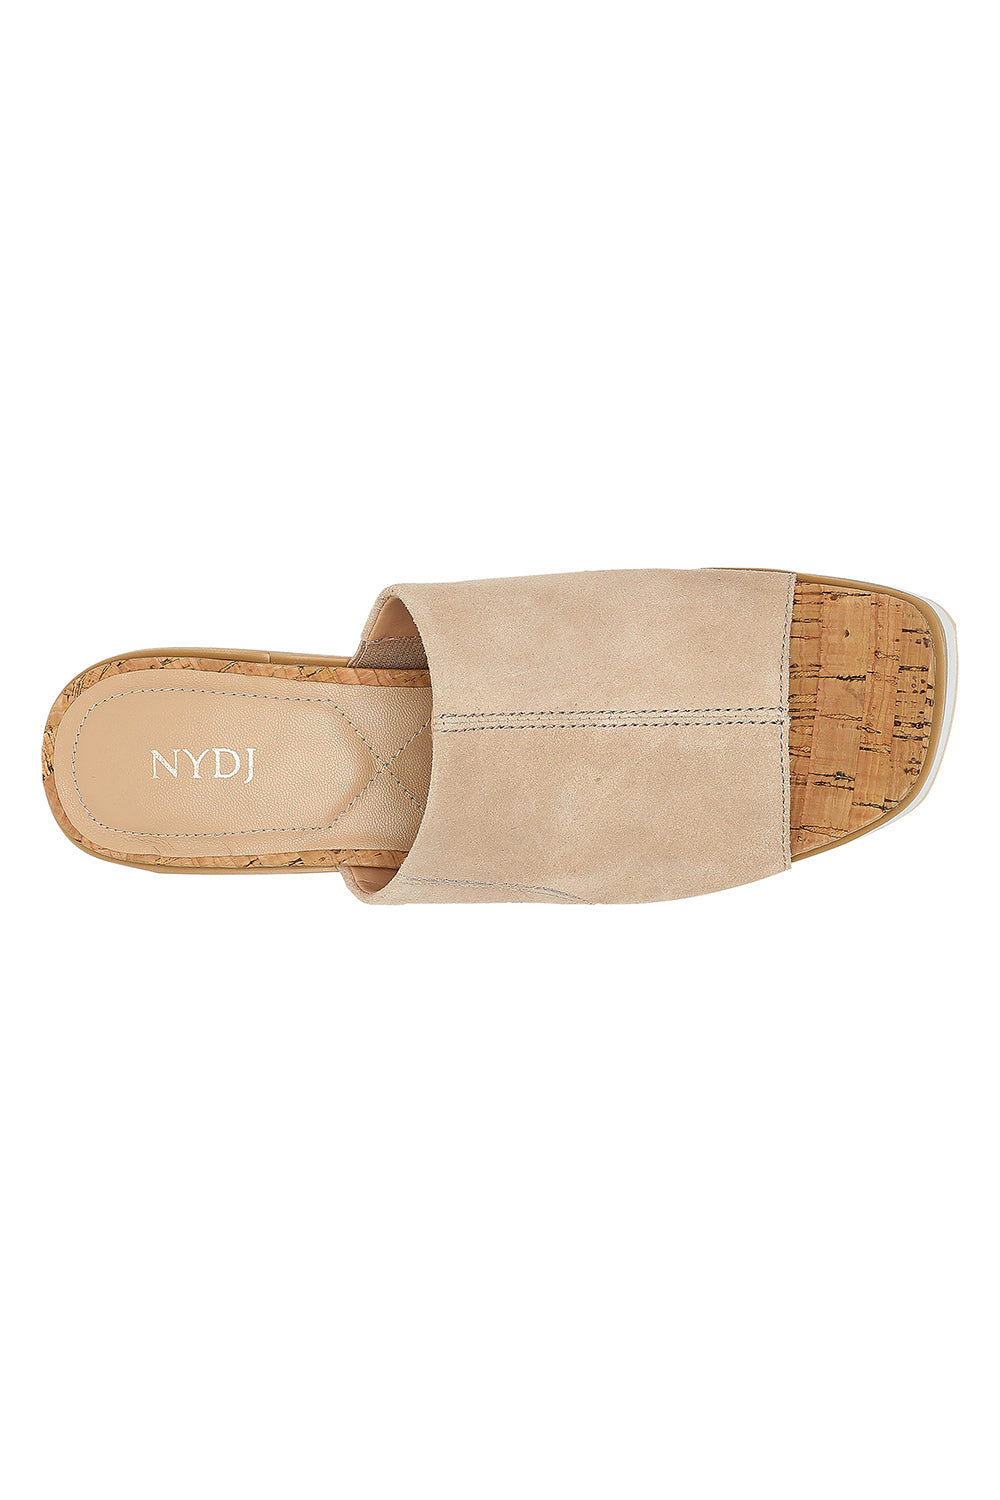 NYDJ Rysa Wedge Sandals In Kid Suede - Sand